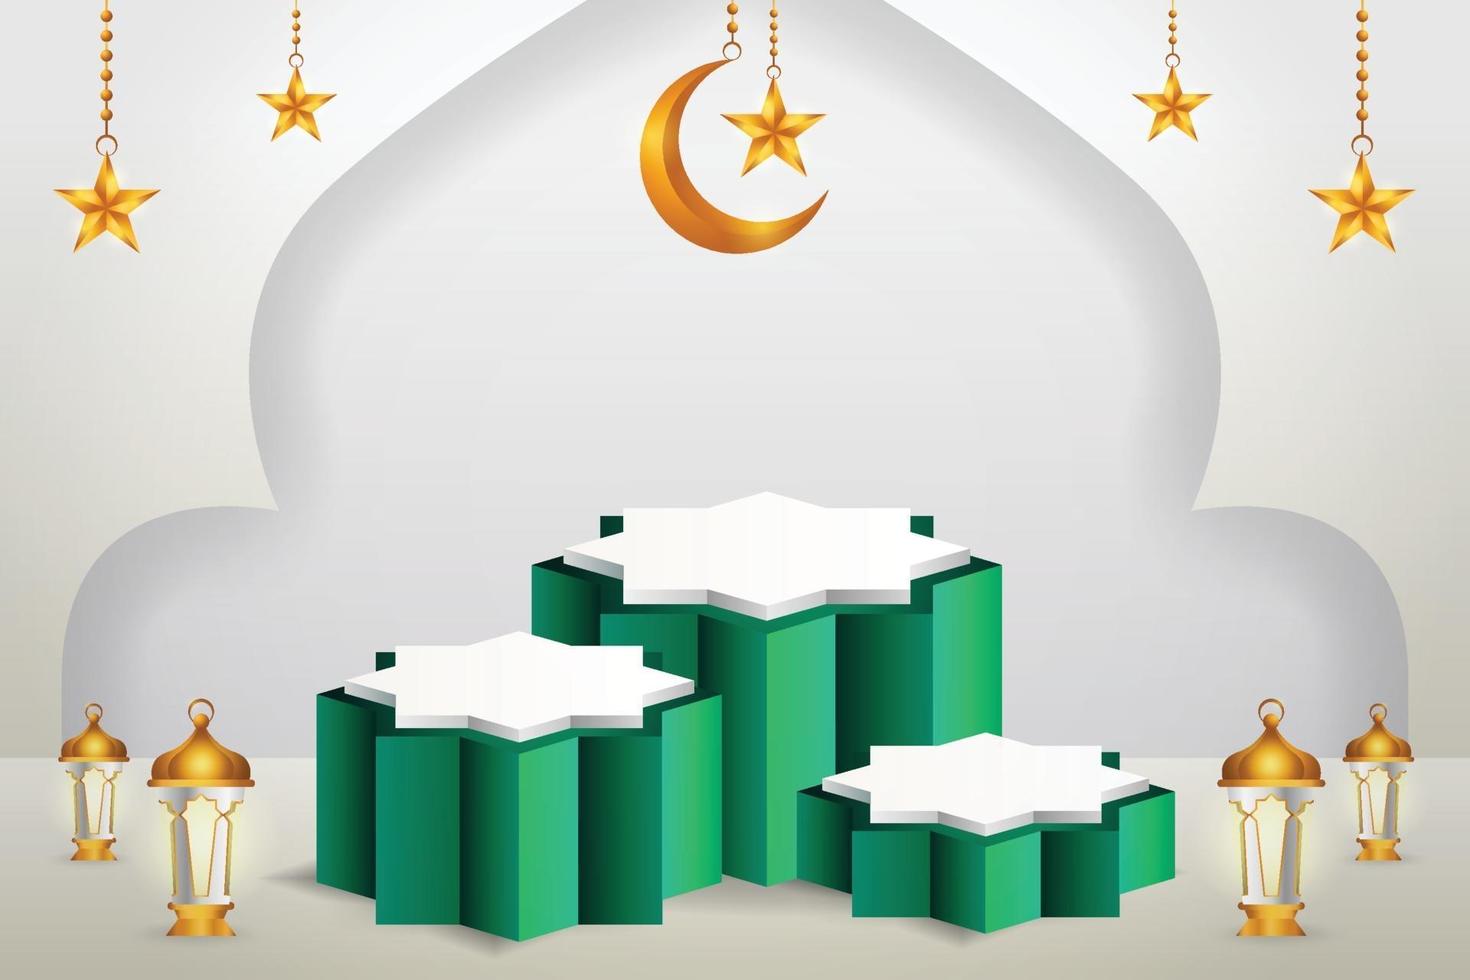 Affichage du produit 3D sur le thème du podium vert et blanc islamique avec croissant de lune, lanterne et étoile pour le ramadan vecteur